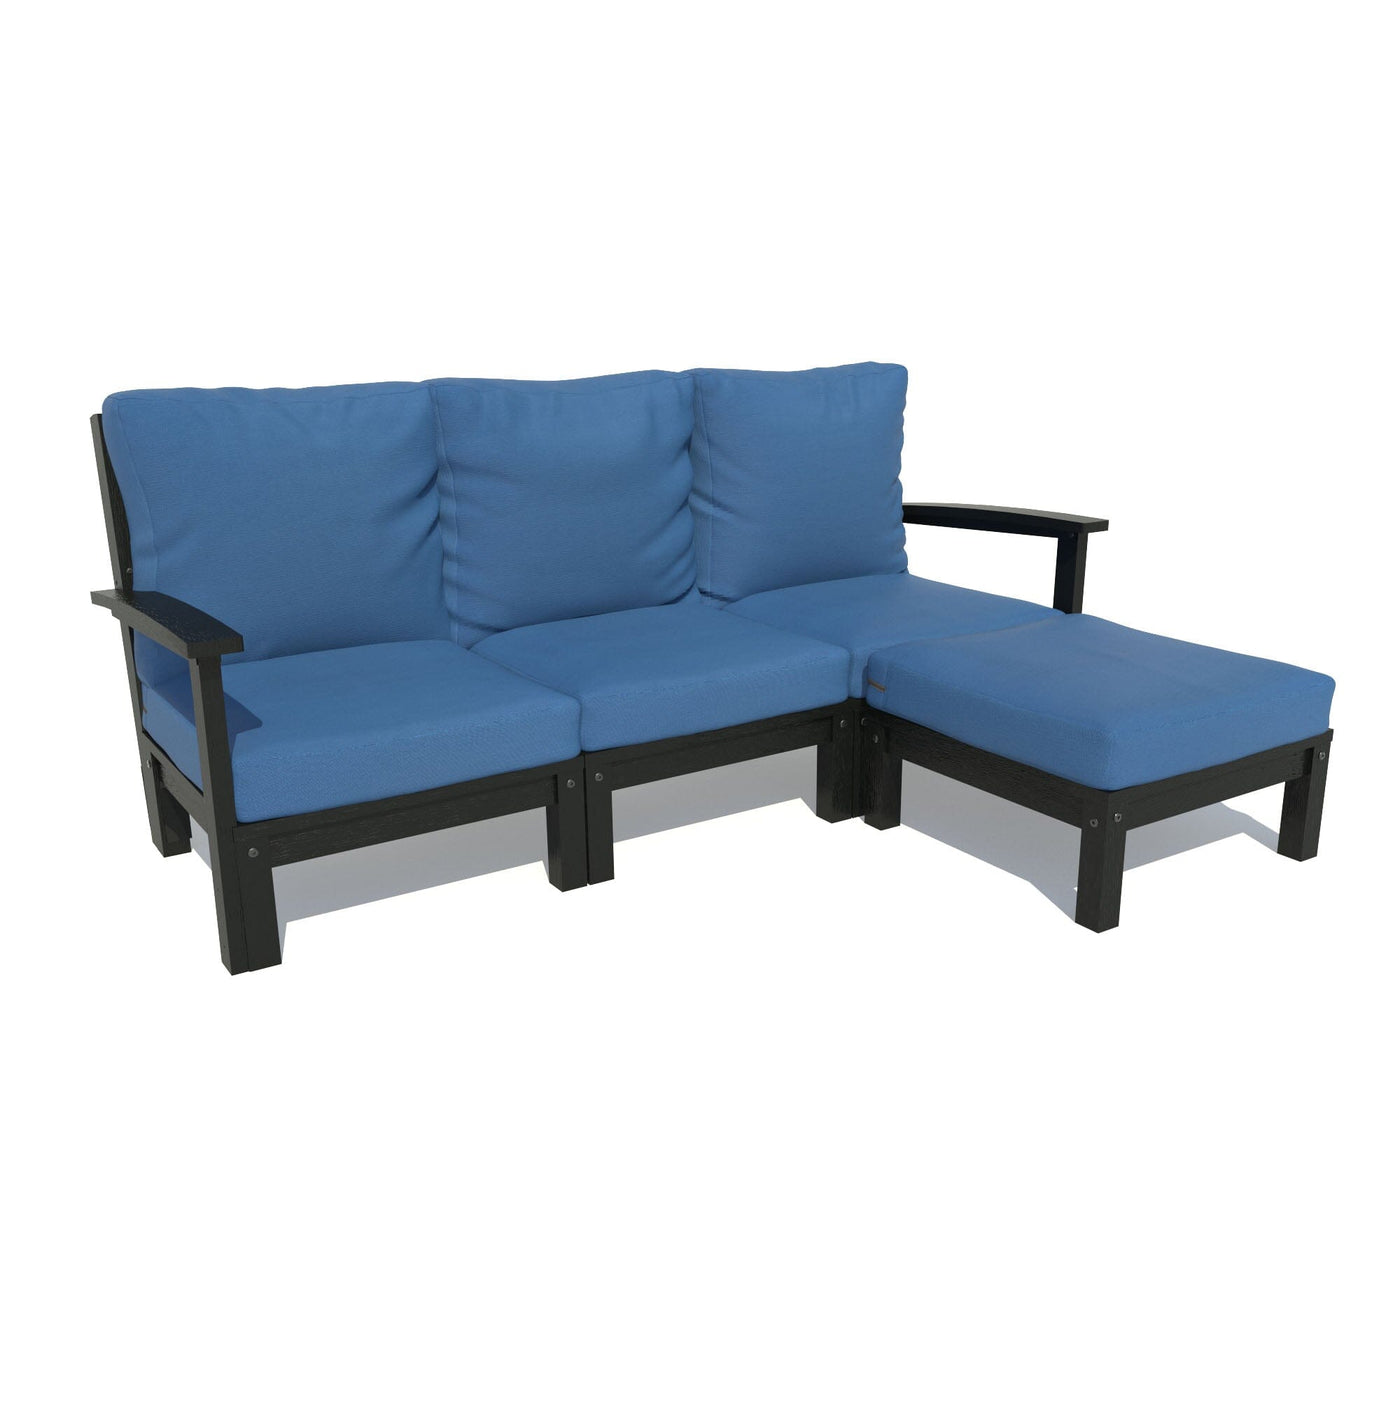 Bespoke Deep Seating: Sofa and Ottoman Deep Seating Highwood USA Cobalt Blue Black 